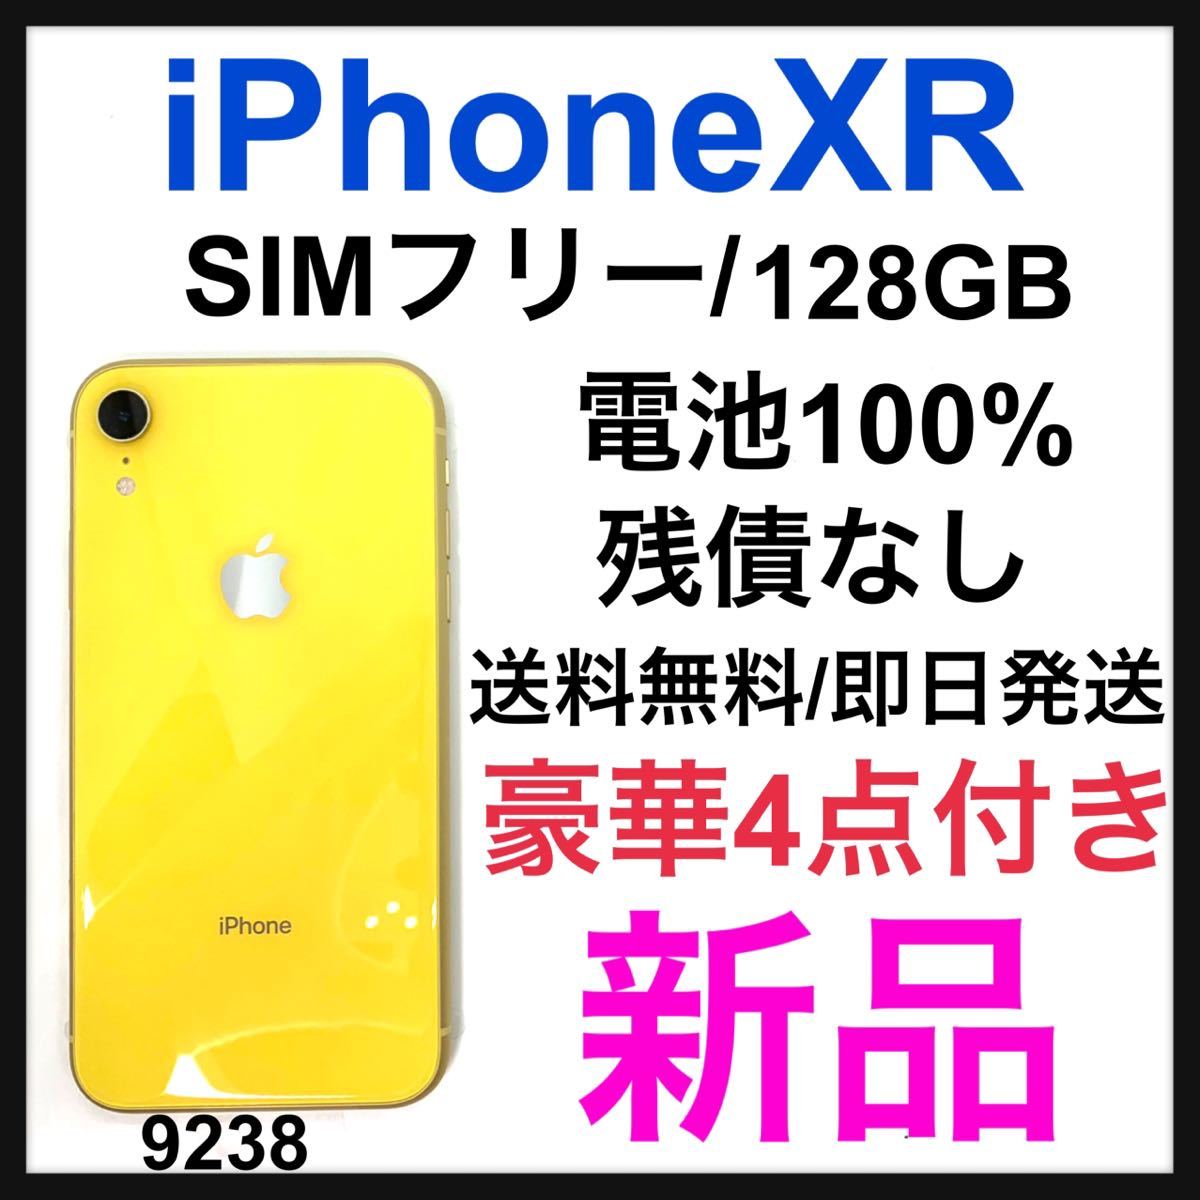 iPhone XR Yellow 128 GB SIMフリー-